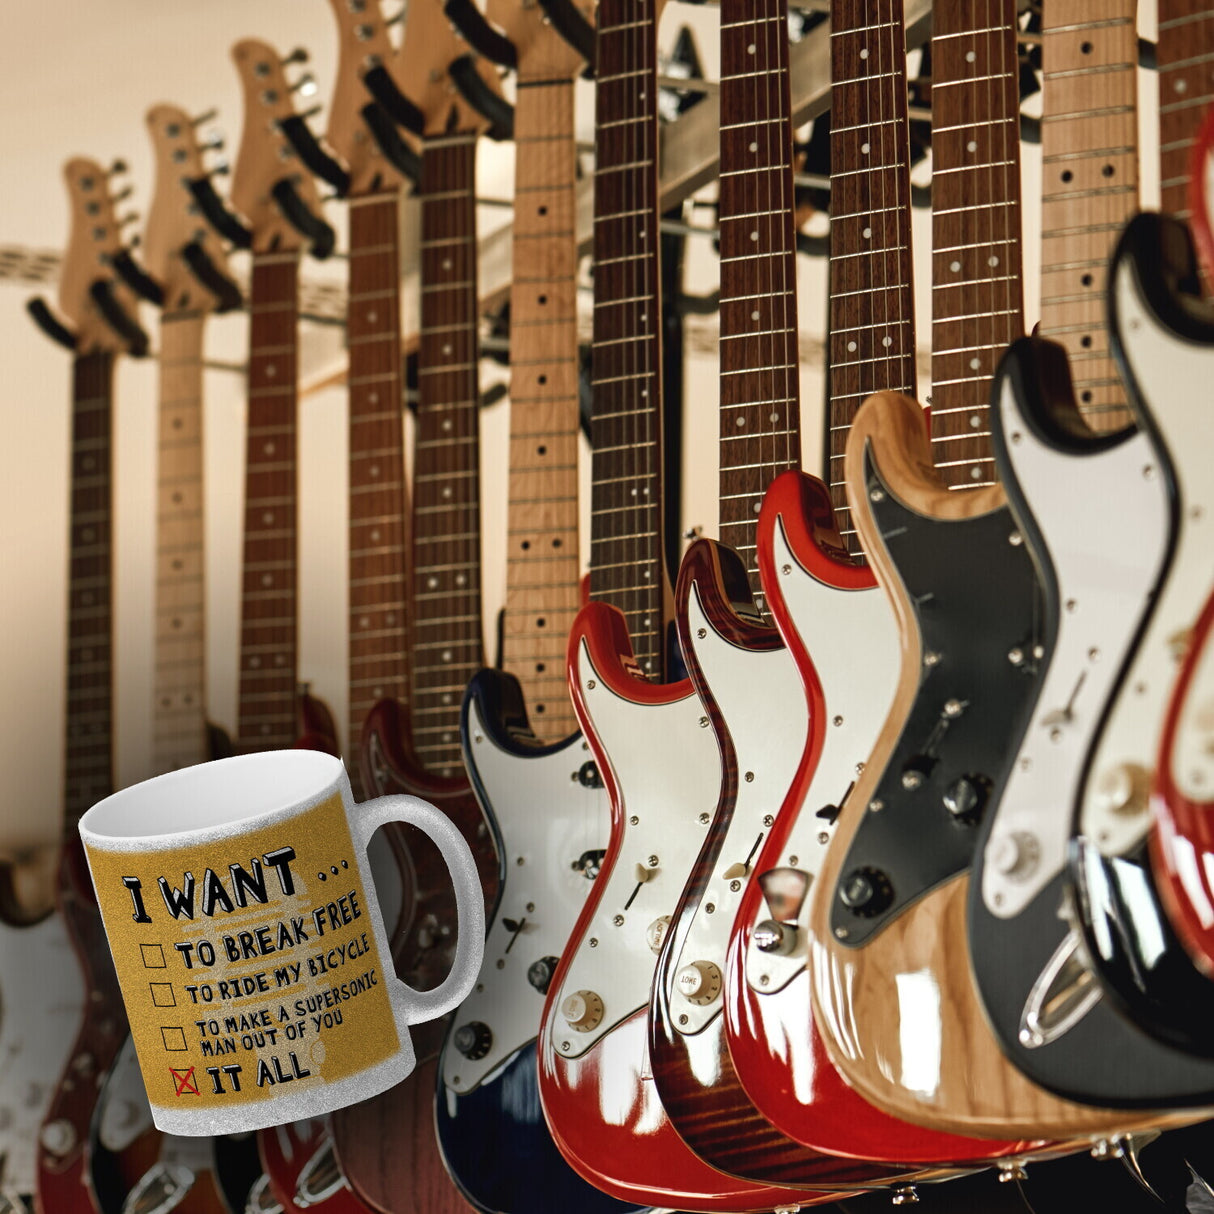 I want … Kaffeebecher mit bekannten Songtexten